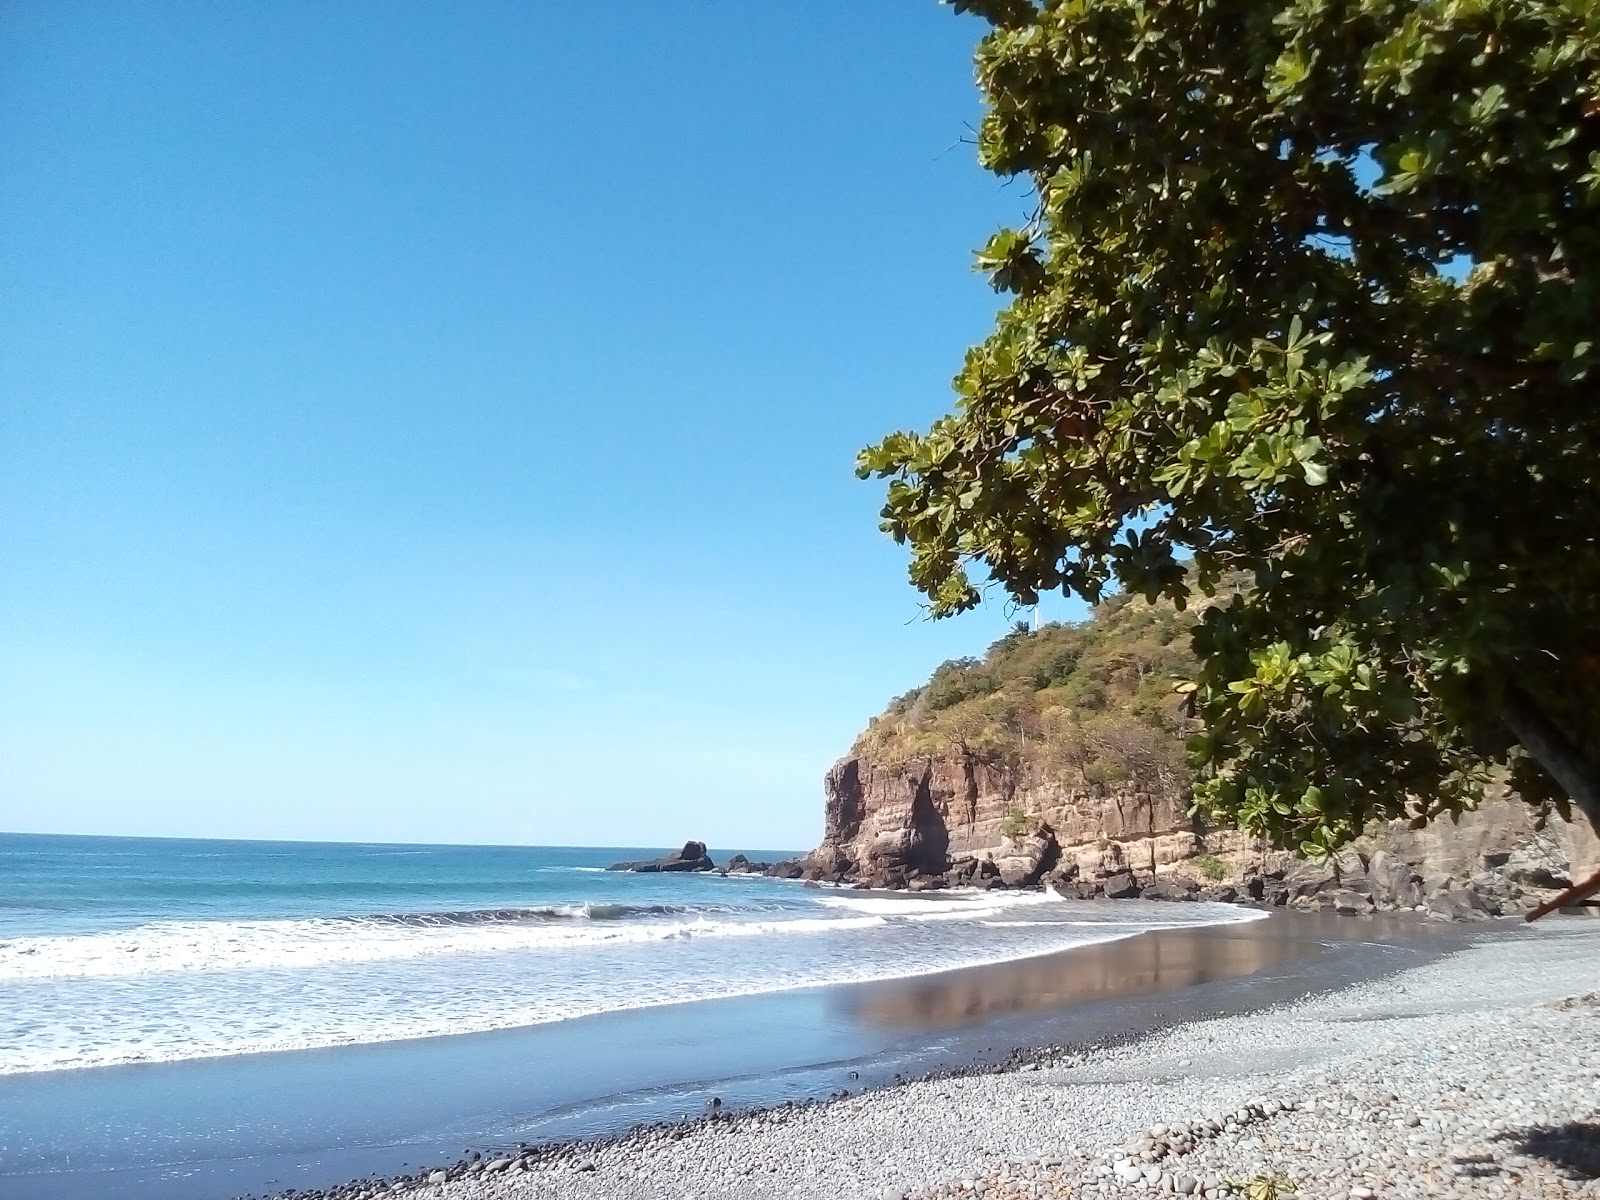 Foto von La Perla beach mit geräumiger strand